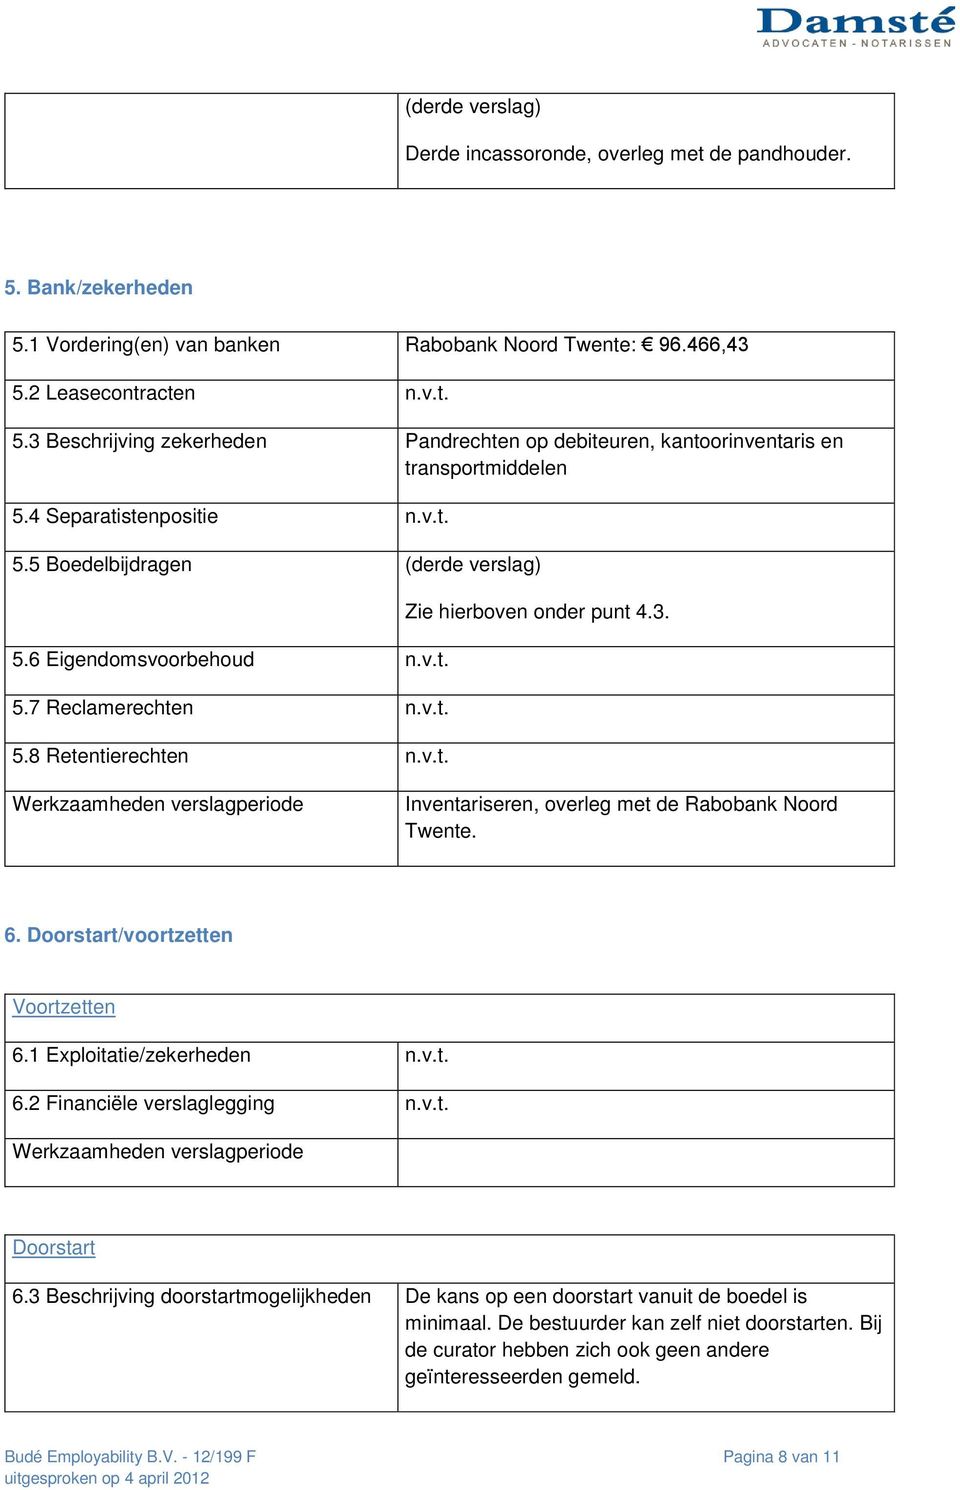 Inventariseren, overleg met de Rabobank Noord Twente. 6. Doorstart/voortzetten Voortzetten 6.1 Exploitatie/zekerheden n.v.t. 6.2 Financiële verslaglegging n.v.t. Doorstart 6.